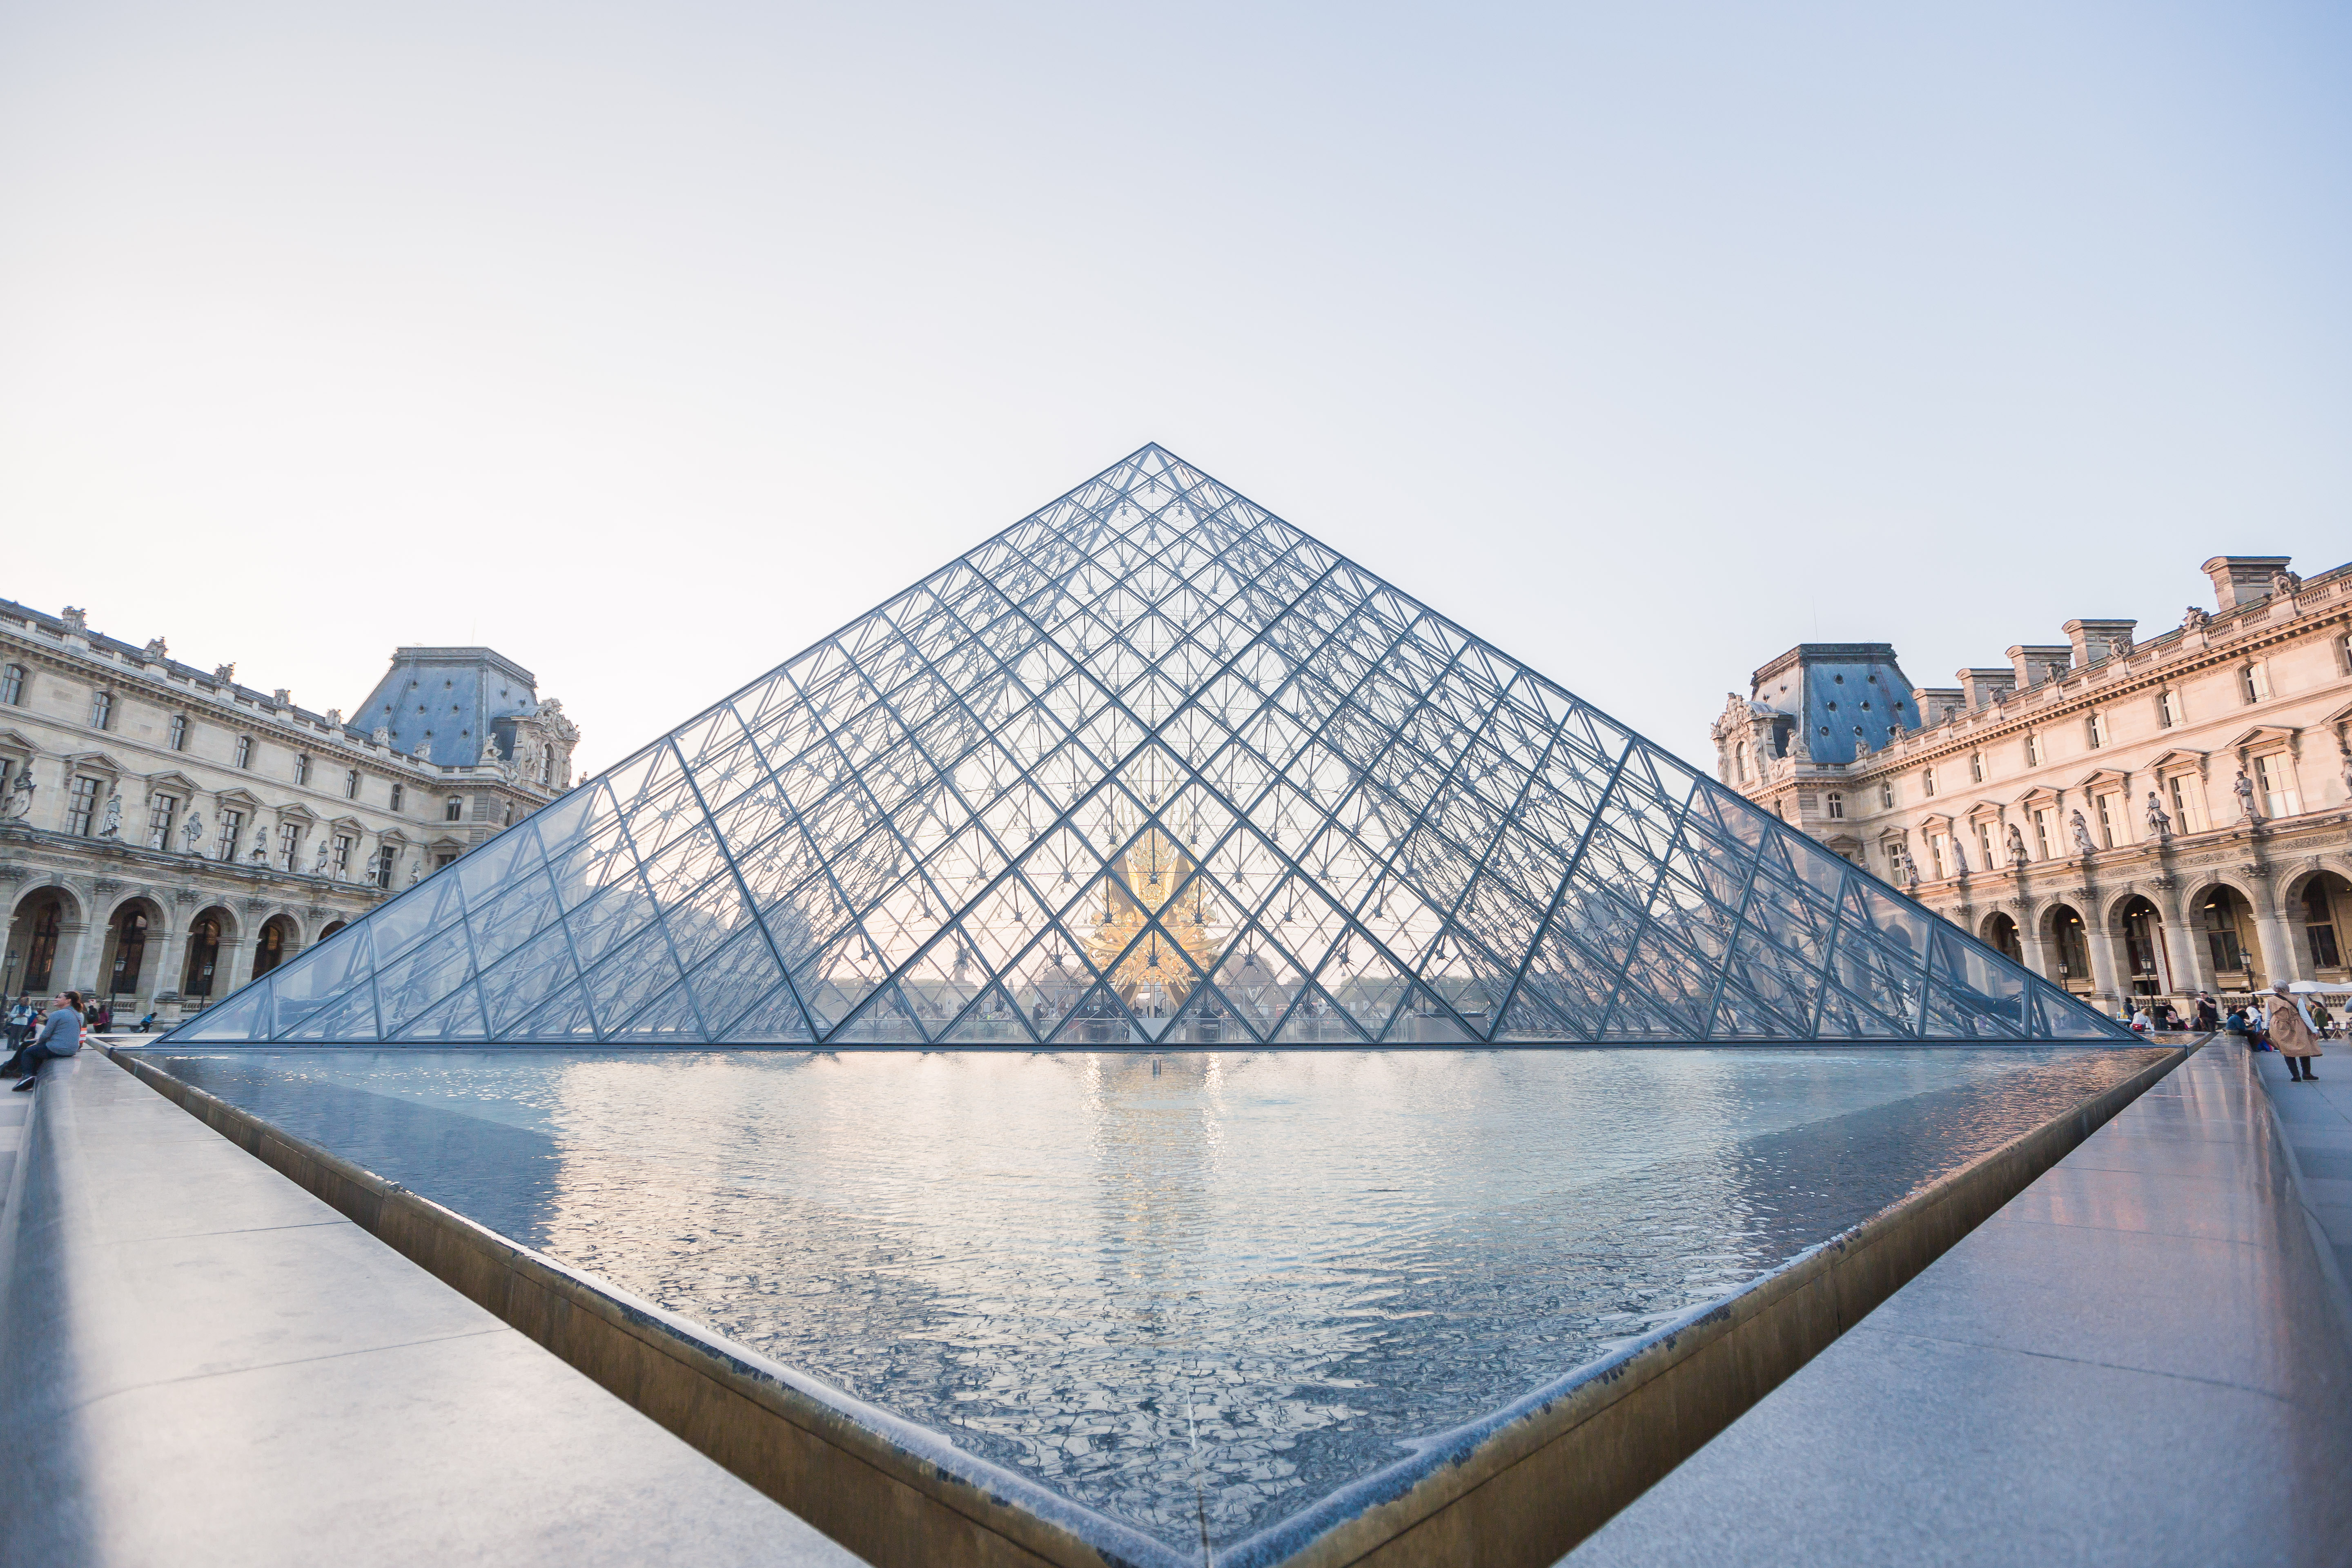 原创贝聿铭建筑生涯中最曲折的设计,落成前饱受争议,如今是巴黎地标